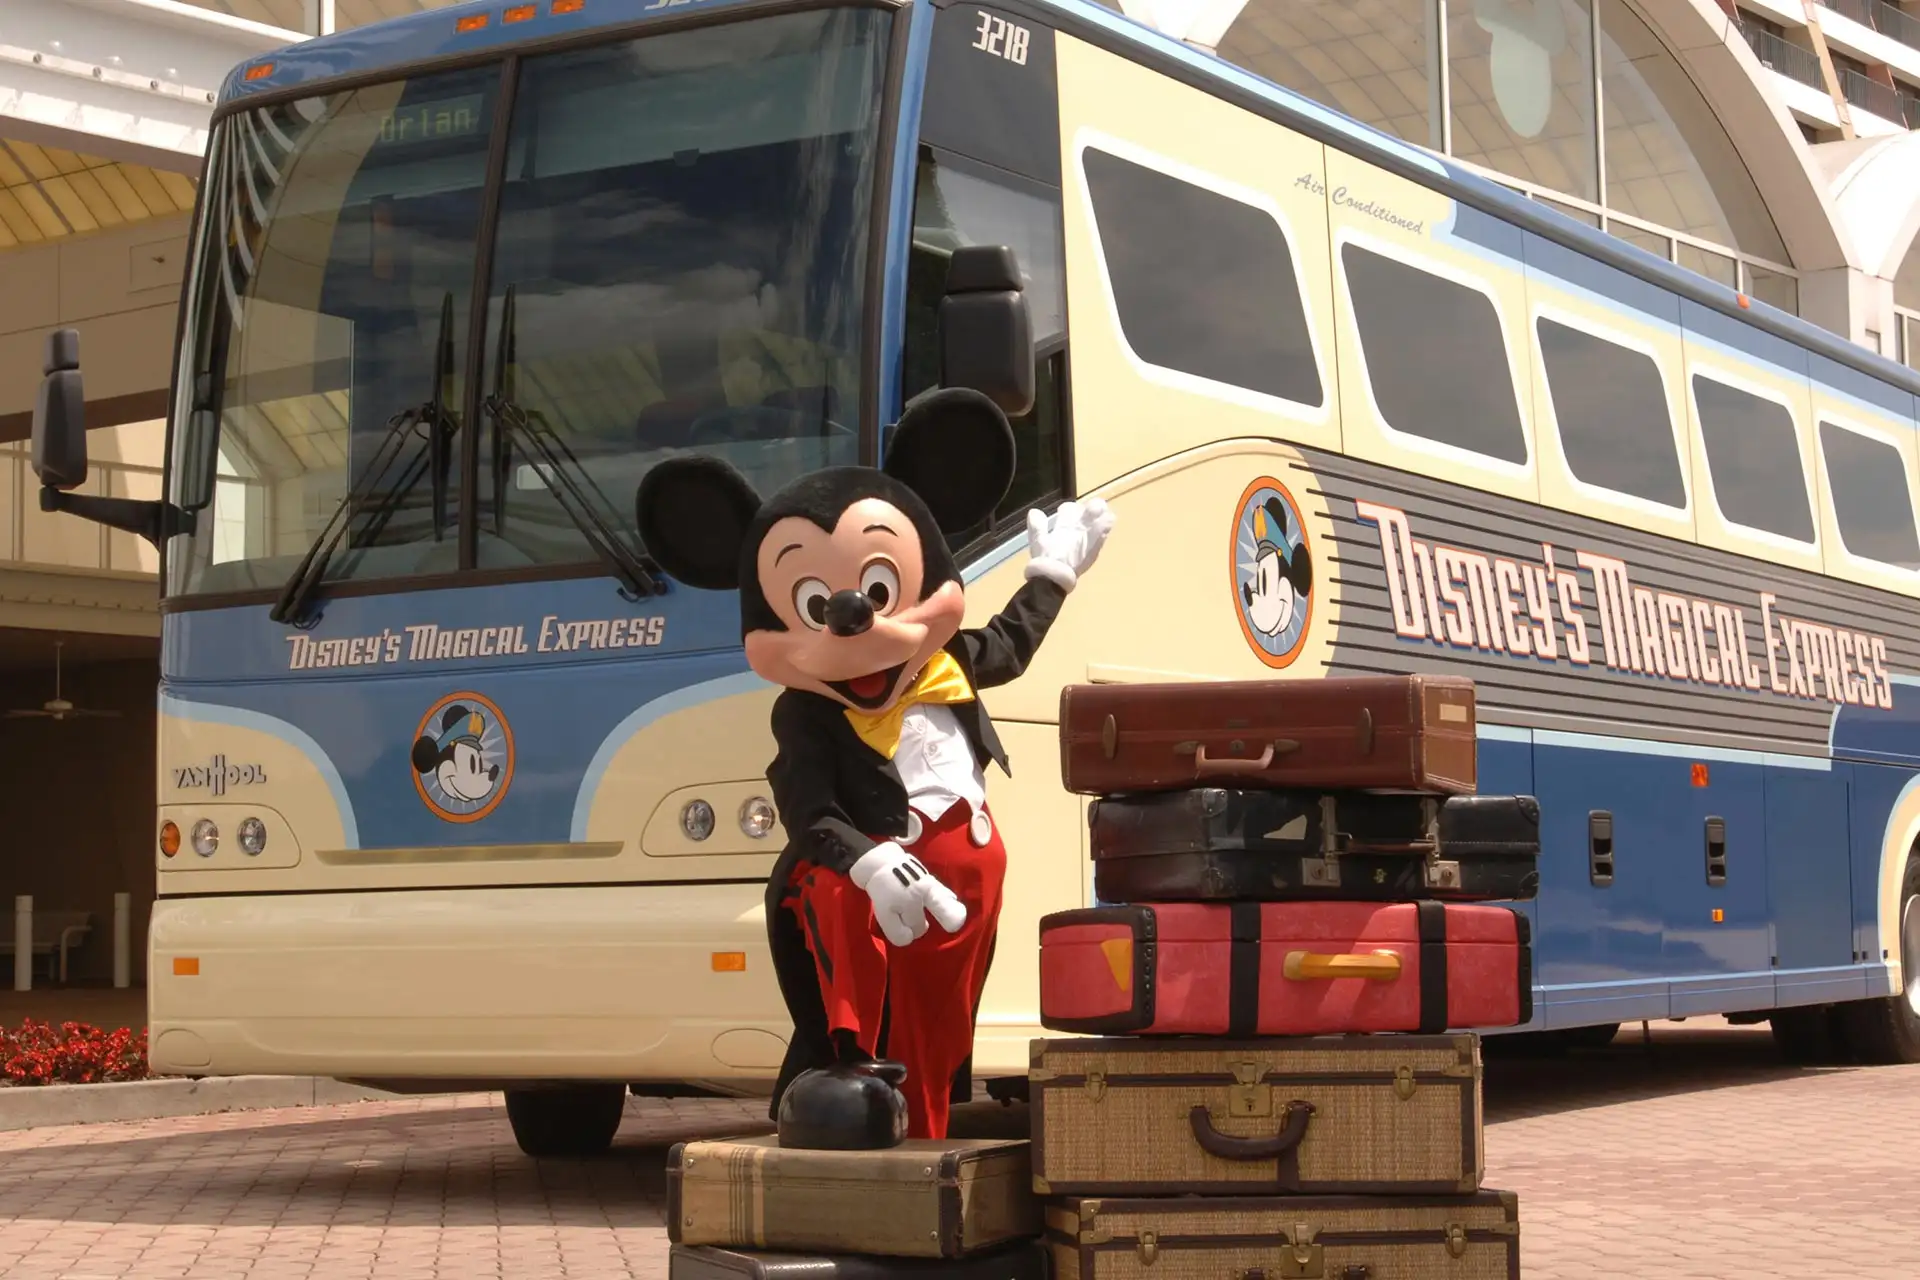 Disney's Magical Express.